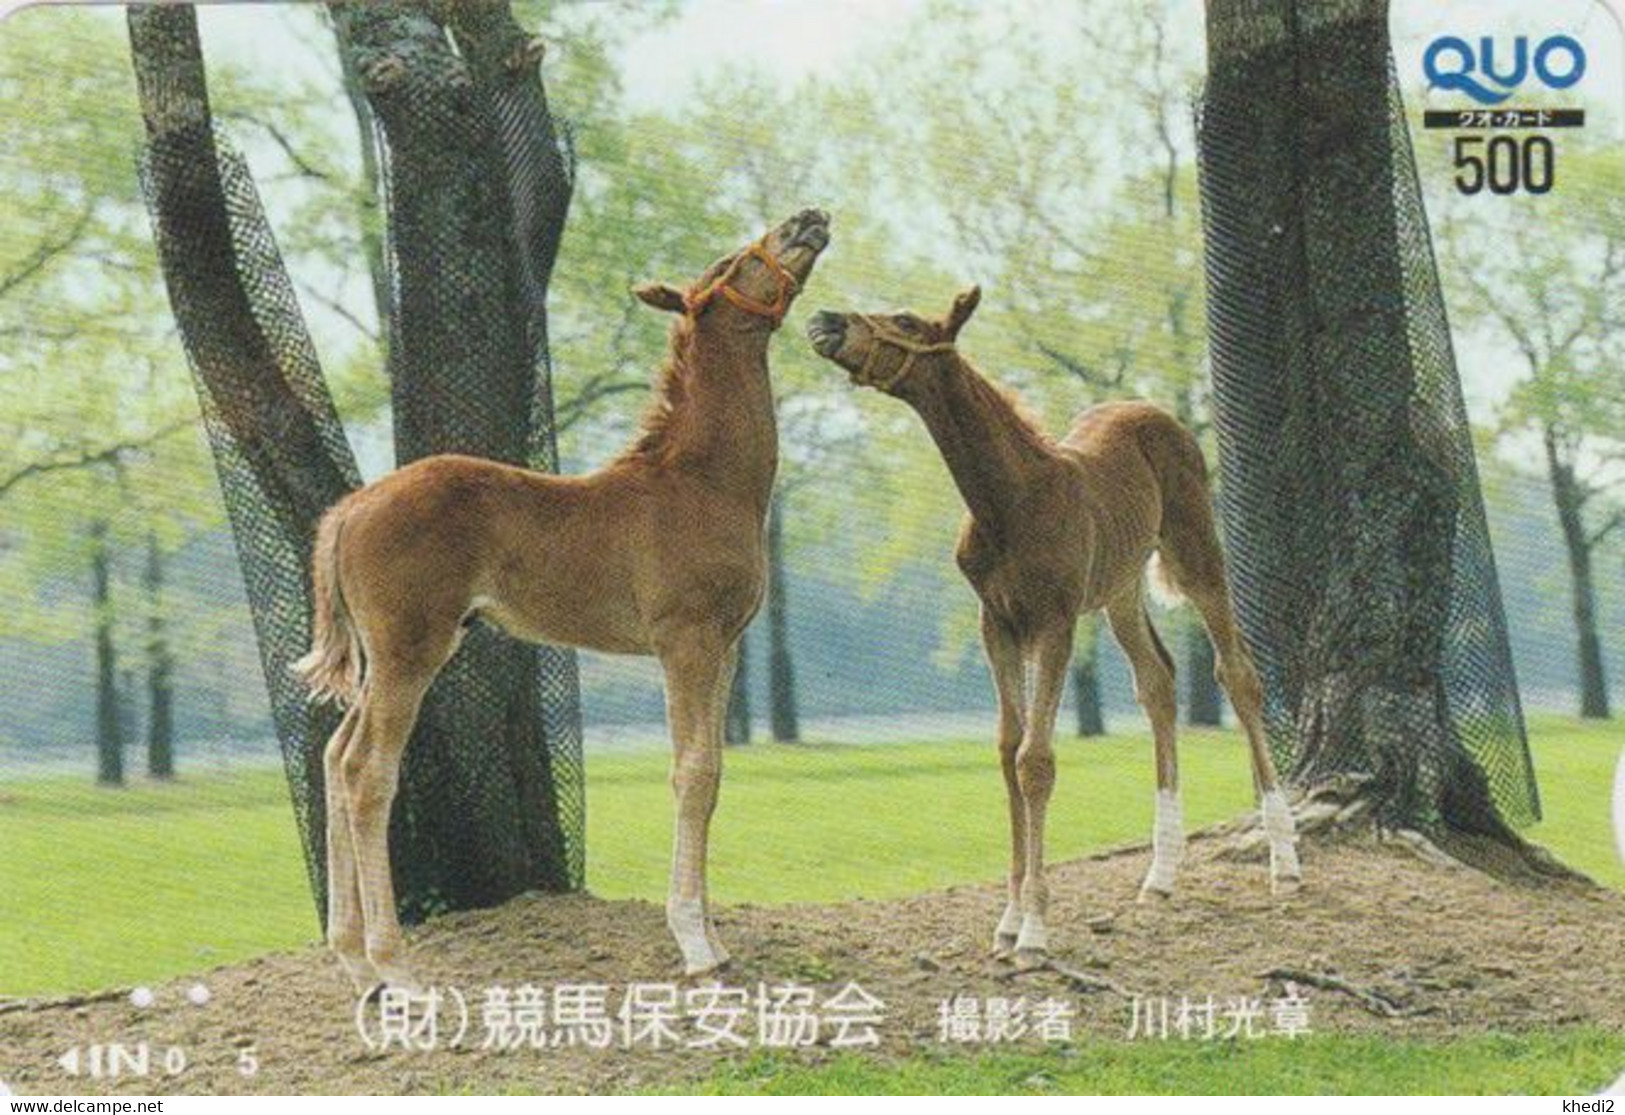 Carte Prépayée JAPON - ANIMAL - CHEVAL Chevaux / Poulain - HORSE JAPAN Prepaid Quo Card - PFERD - BE 412 - Paarden